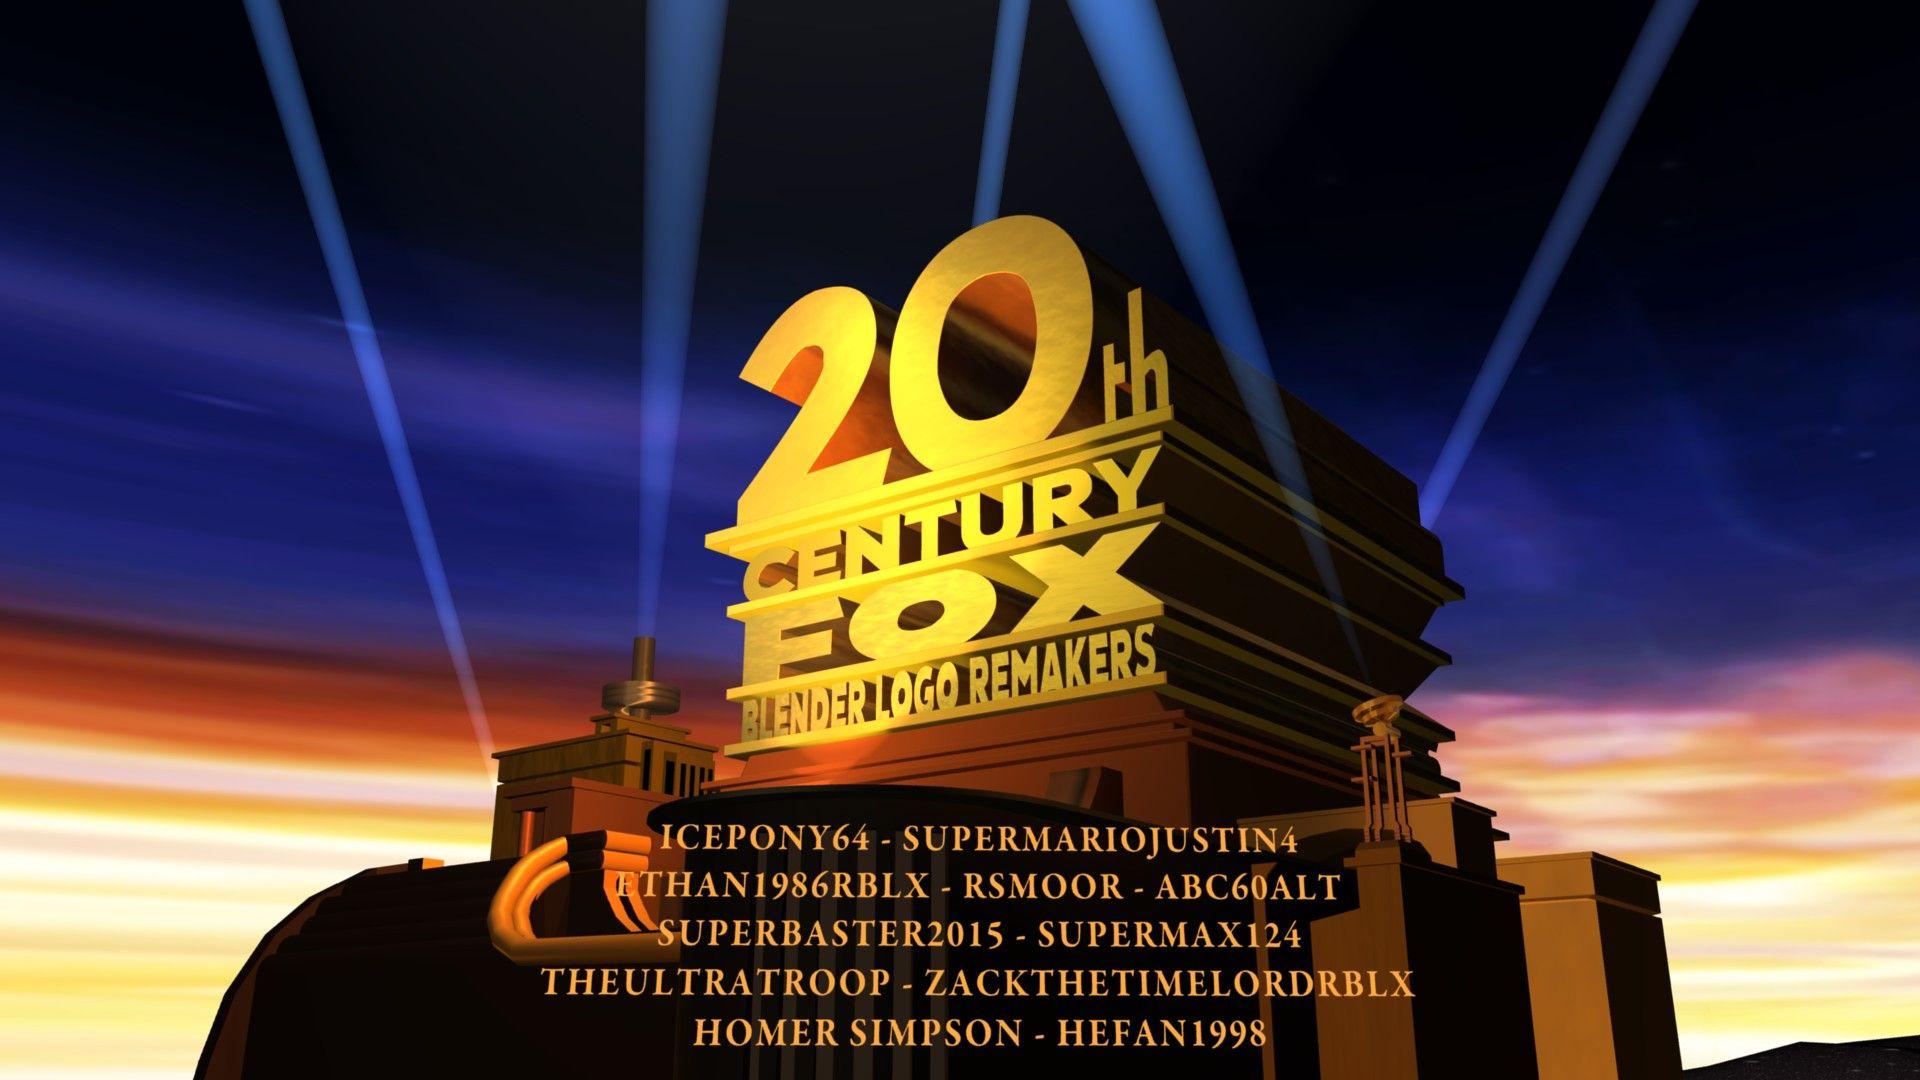 20th Century Fox Blender Logo - Picture of 20th Century Fox Logo Blender